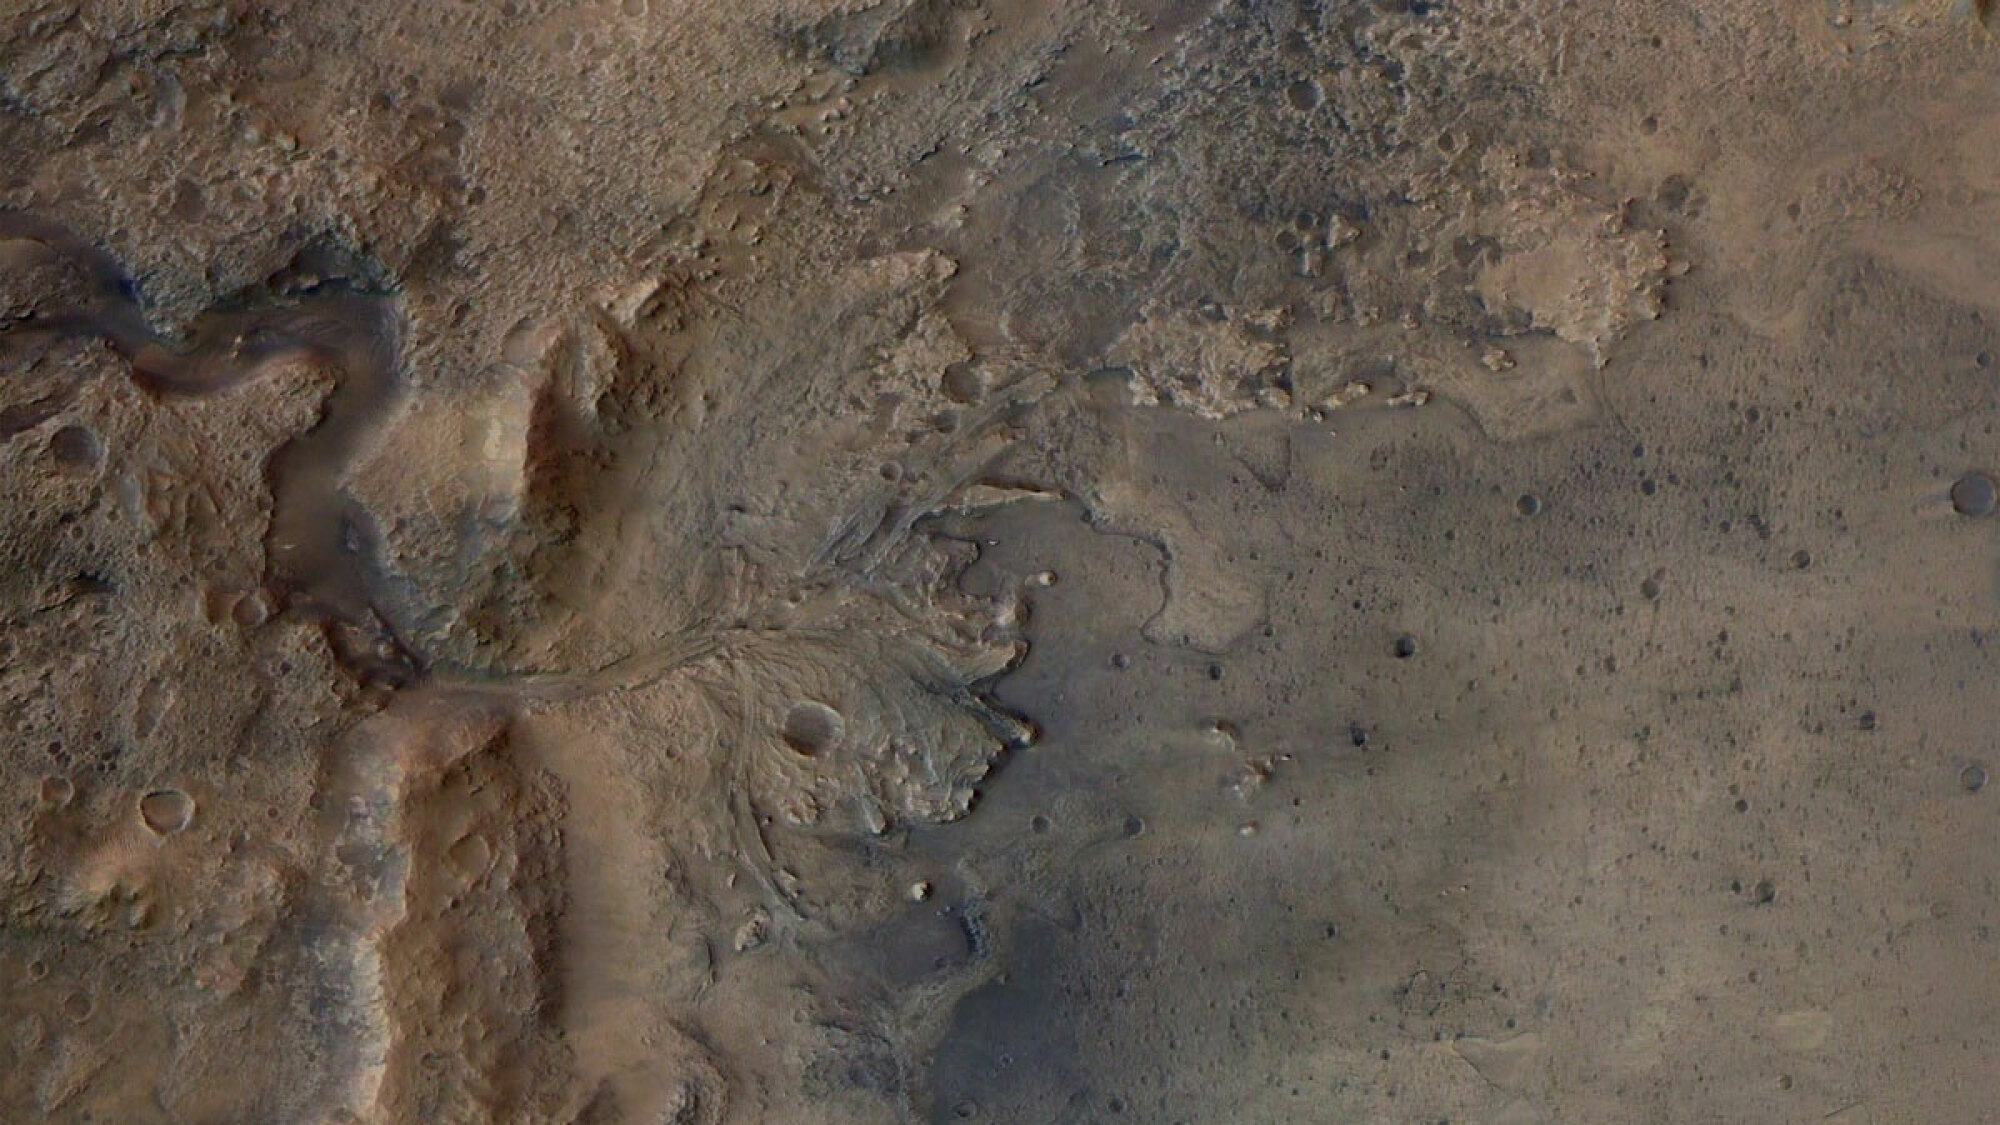 Le cratère Jezero sur Mars, un delta de rivière asséché maintenant exploré par le rover Perseverance de la NASA.